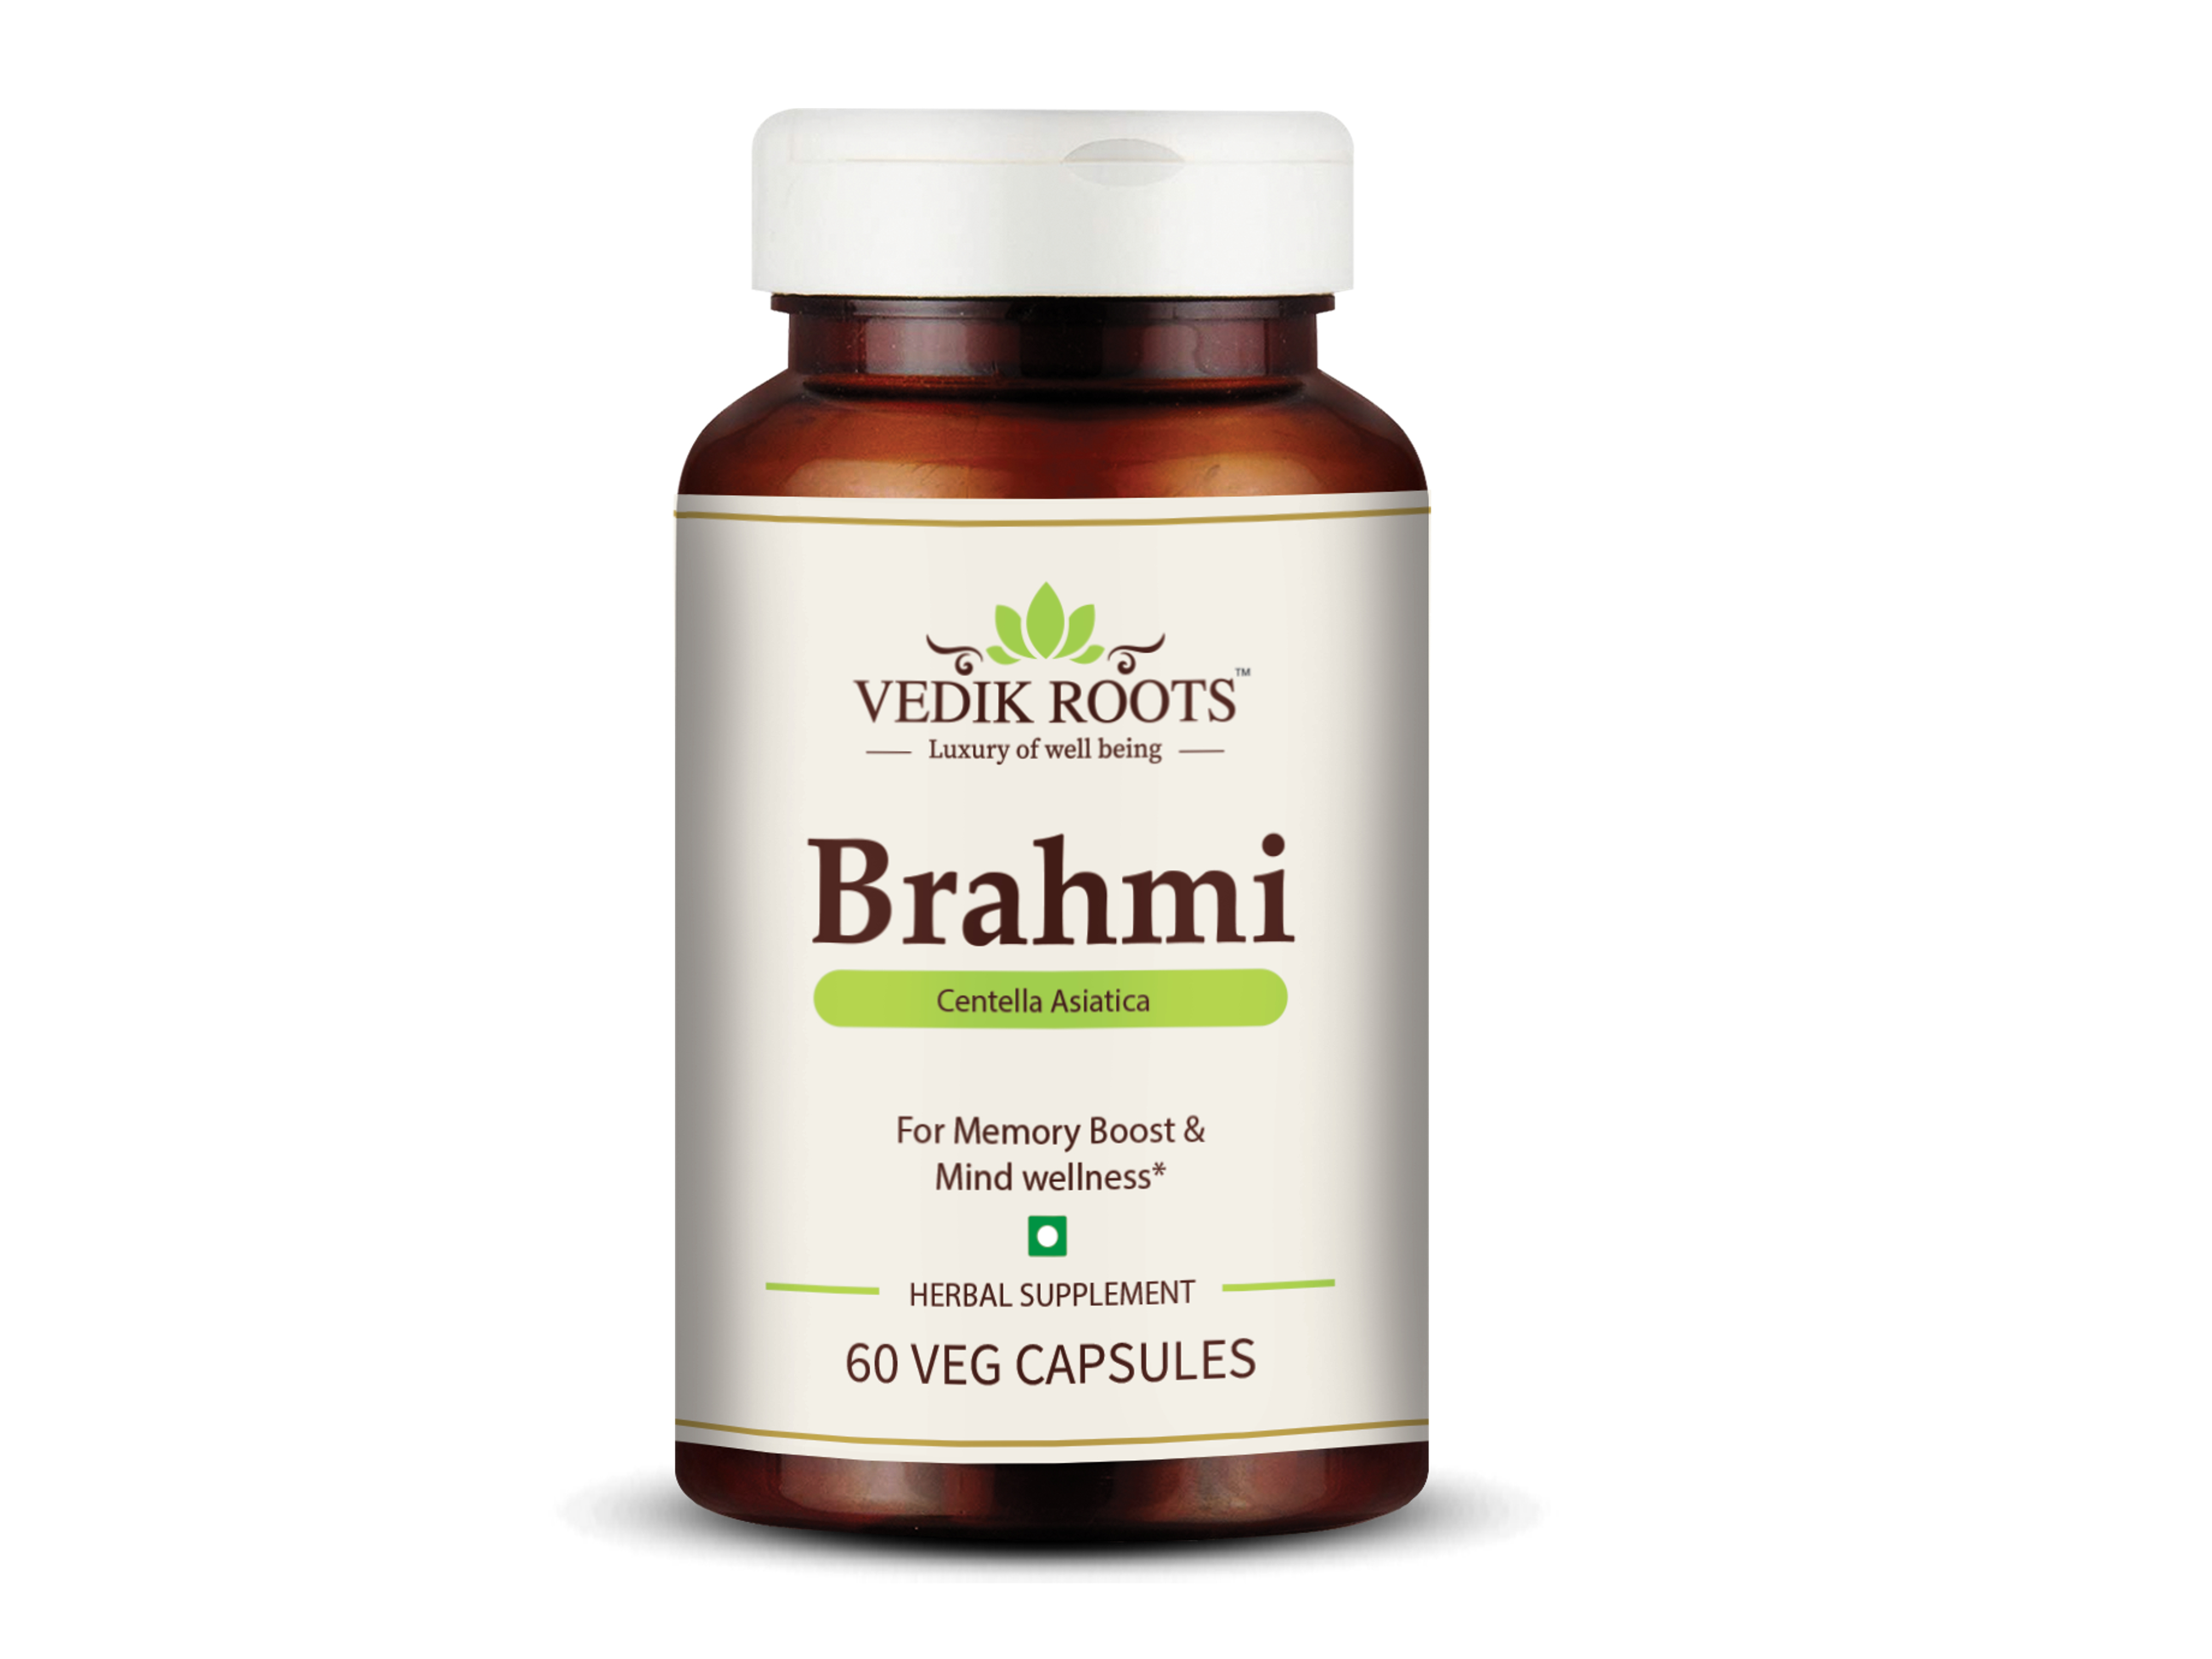 Buy Vedikroots Brahmi Capsules at Best Price Online